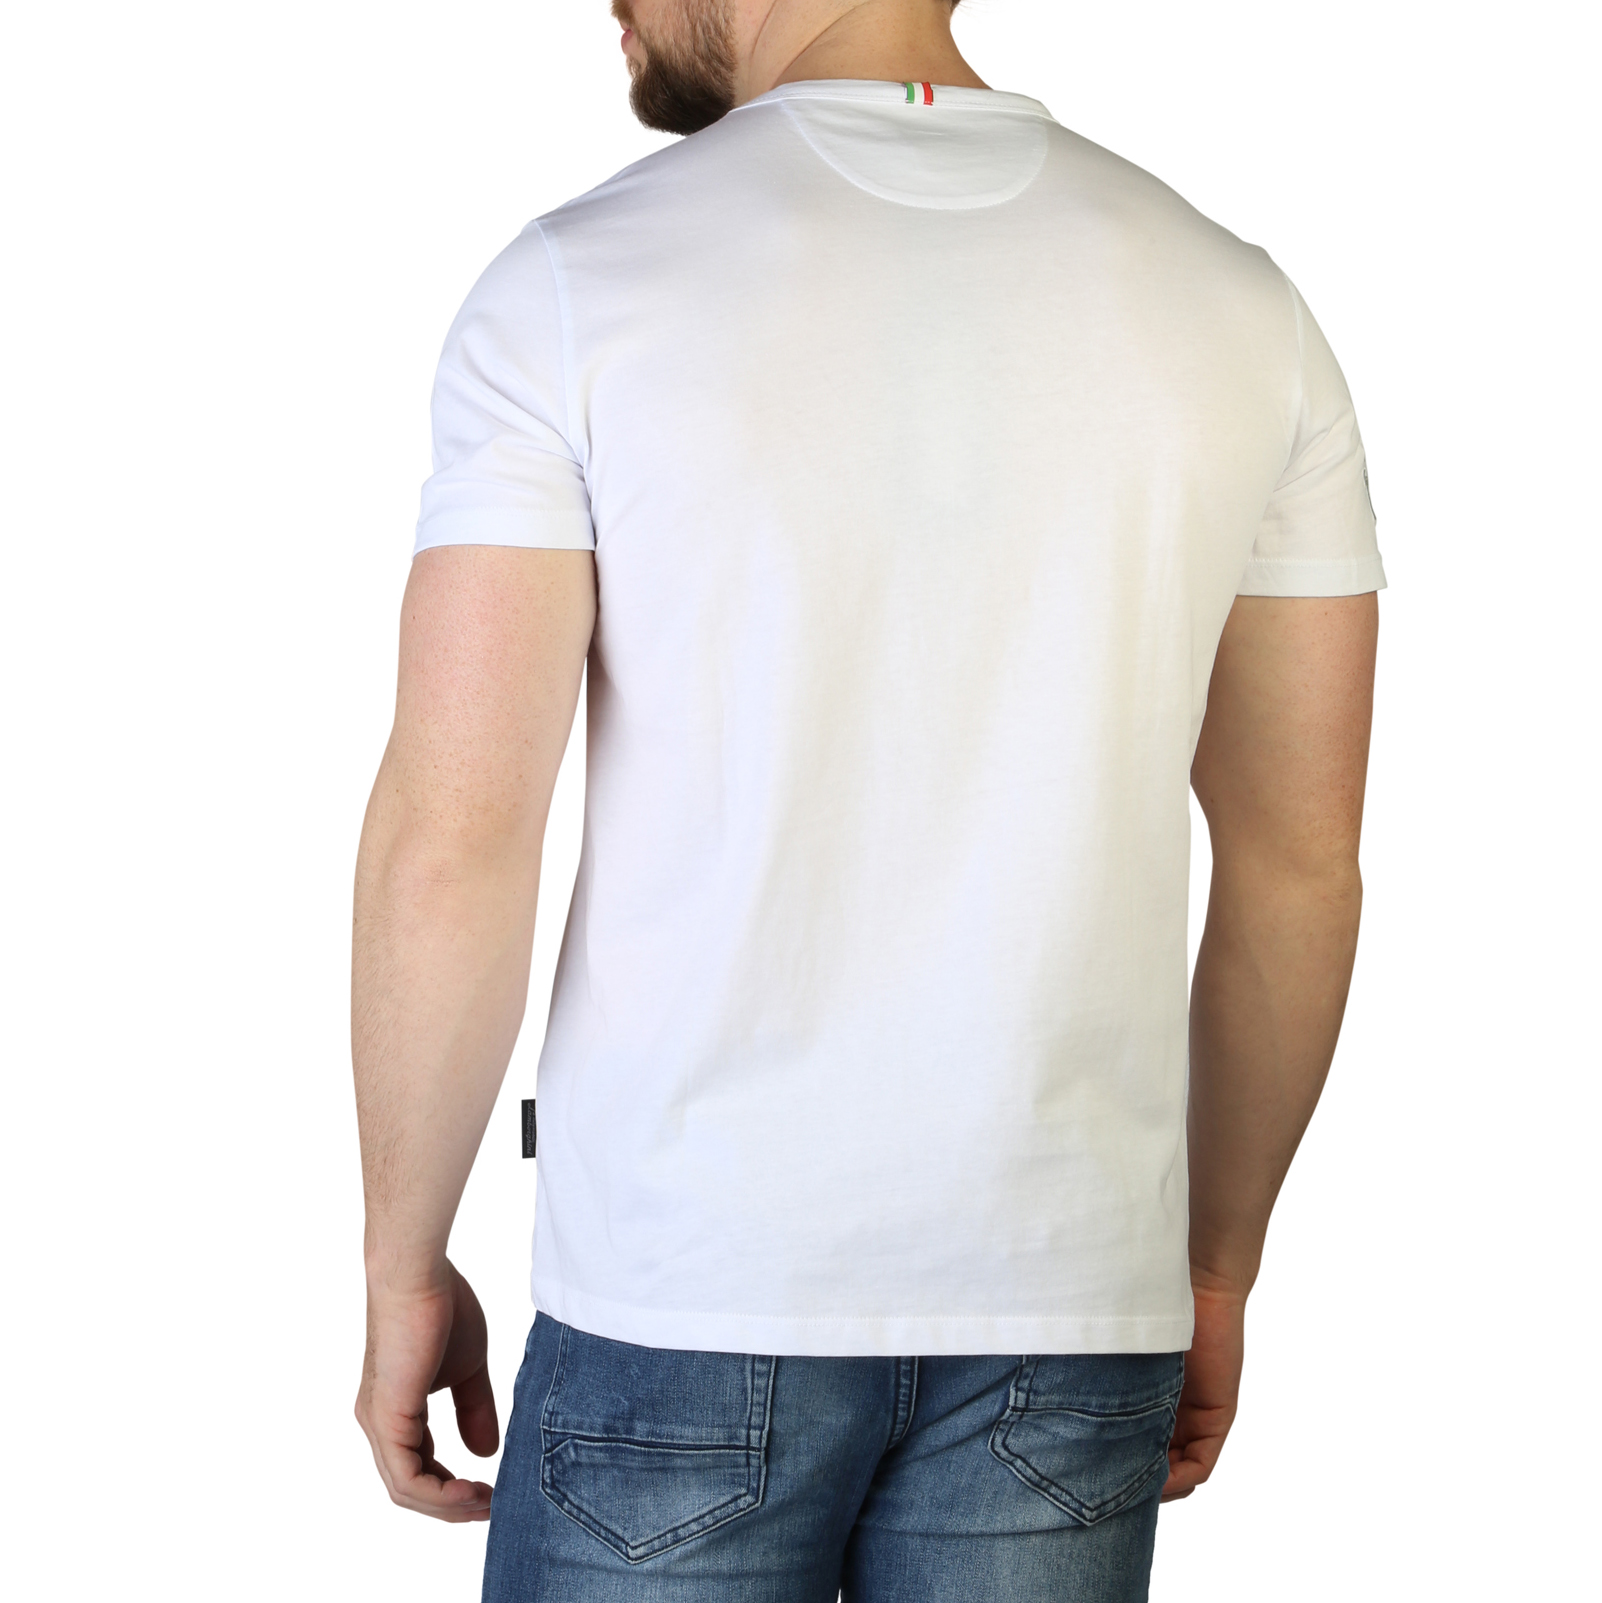 Lamborghini White T-shirts for Men - B3XVB7T4